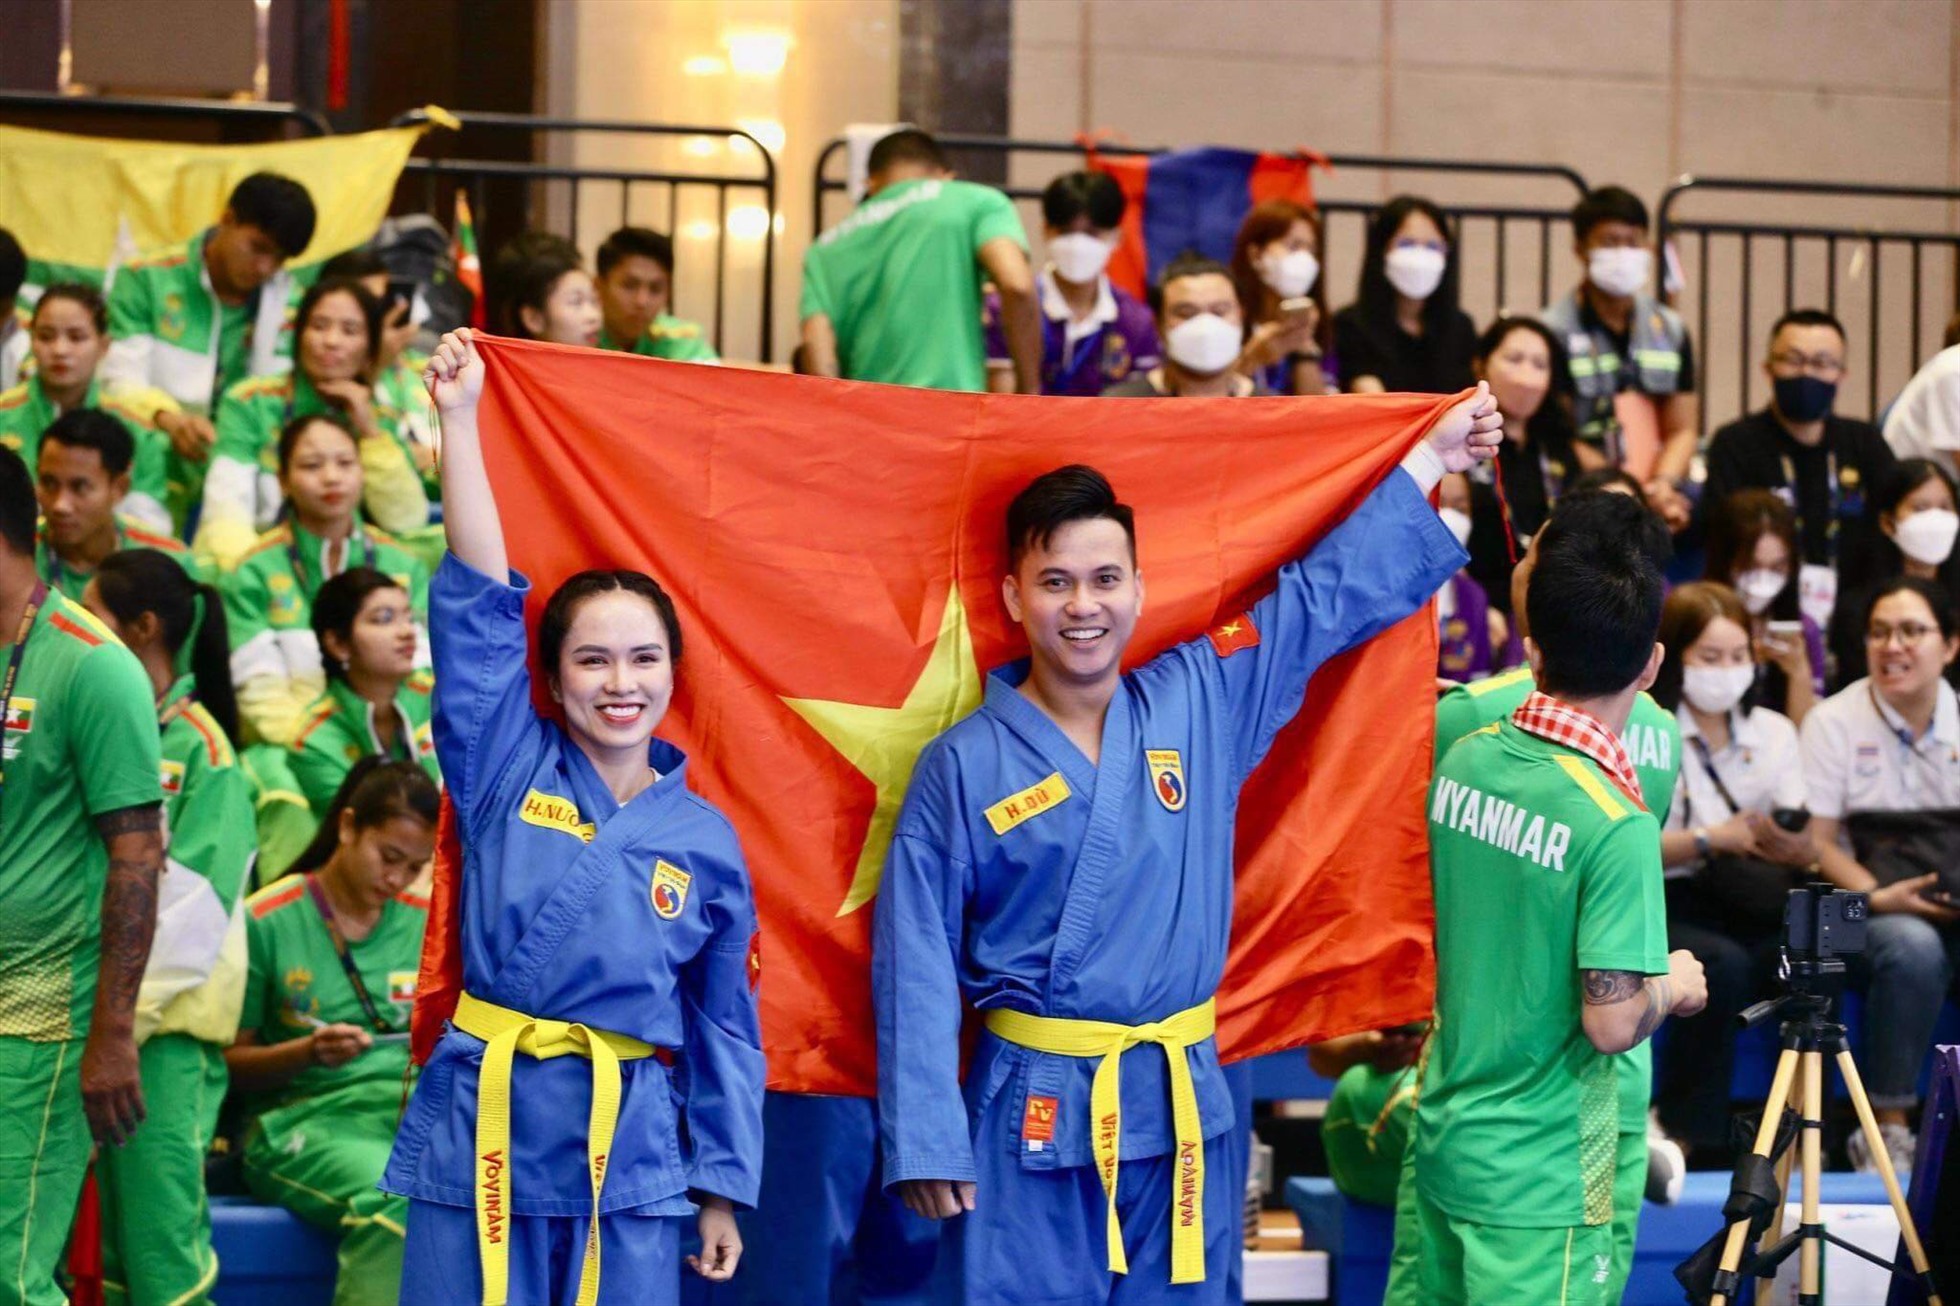 Võ sĩ Nguyễn Thị Hoài Nương và Nguyễn Hoàng Dũ giành huy chương vàng vovinam nội dung tự vệ nữ. Ảnh: Minh Phong